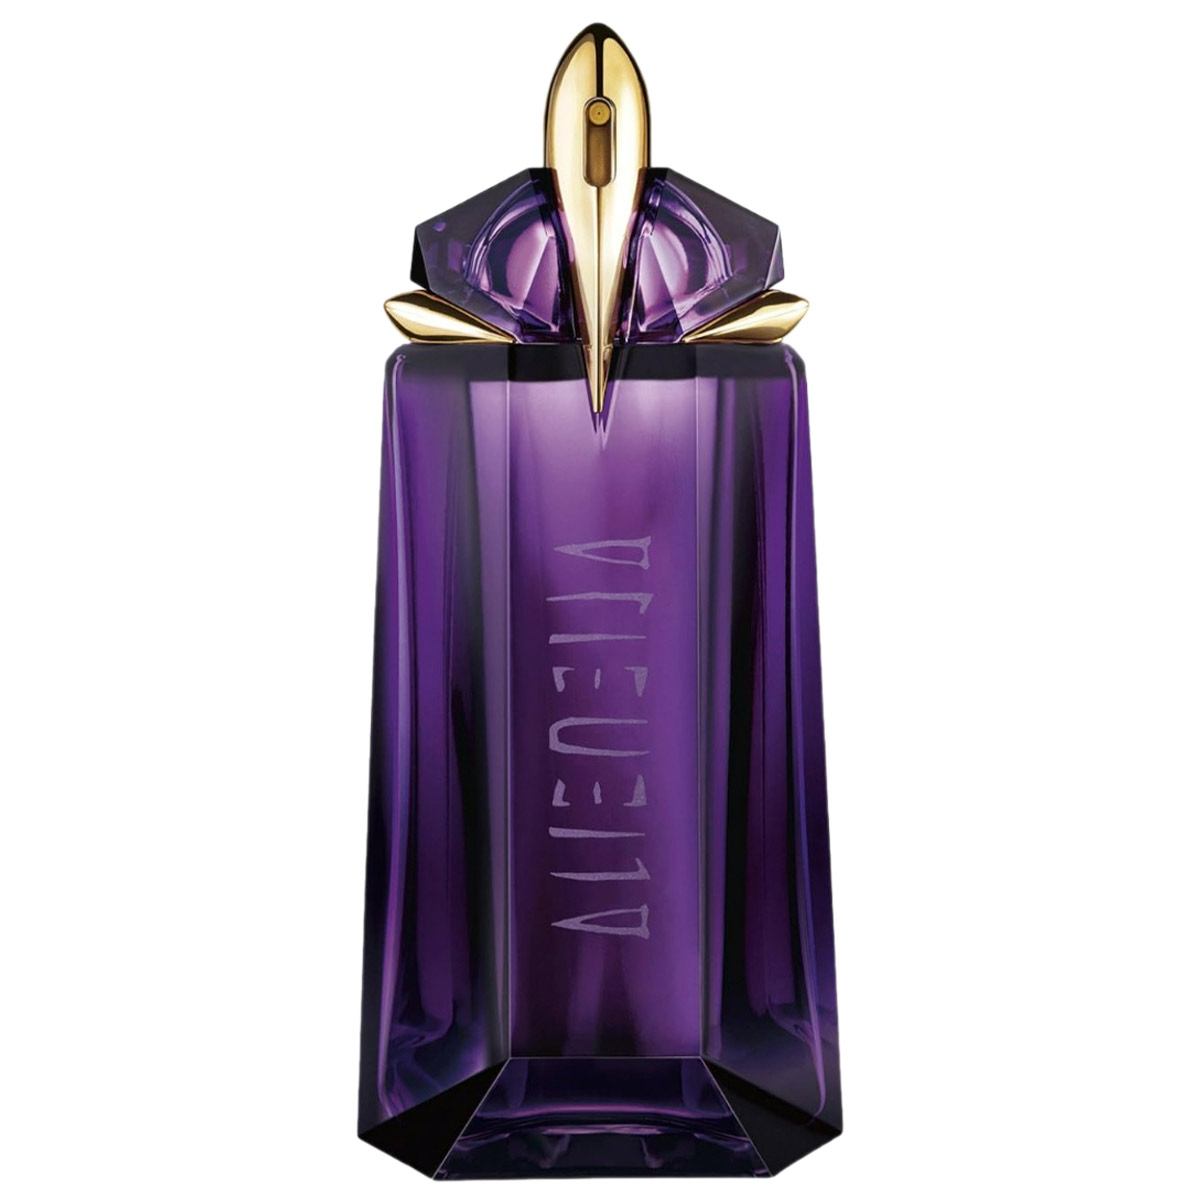 Thierry Mugler Alien For Women Eau de Parfum